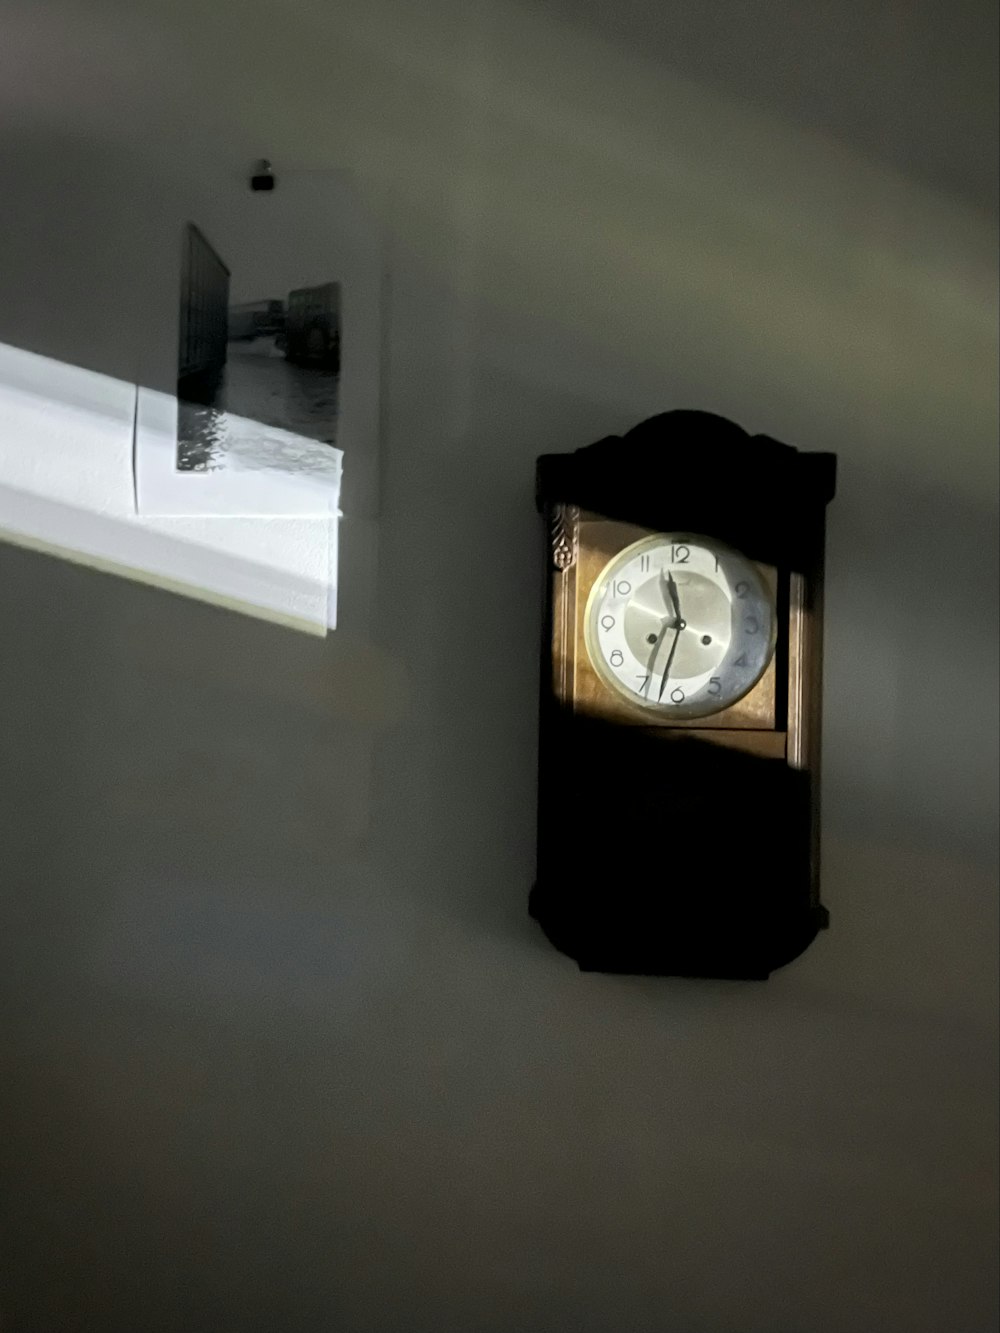 Un reloj en una pared con una ventana al fondo